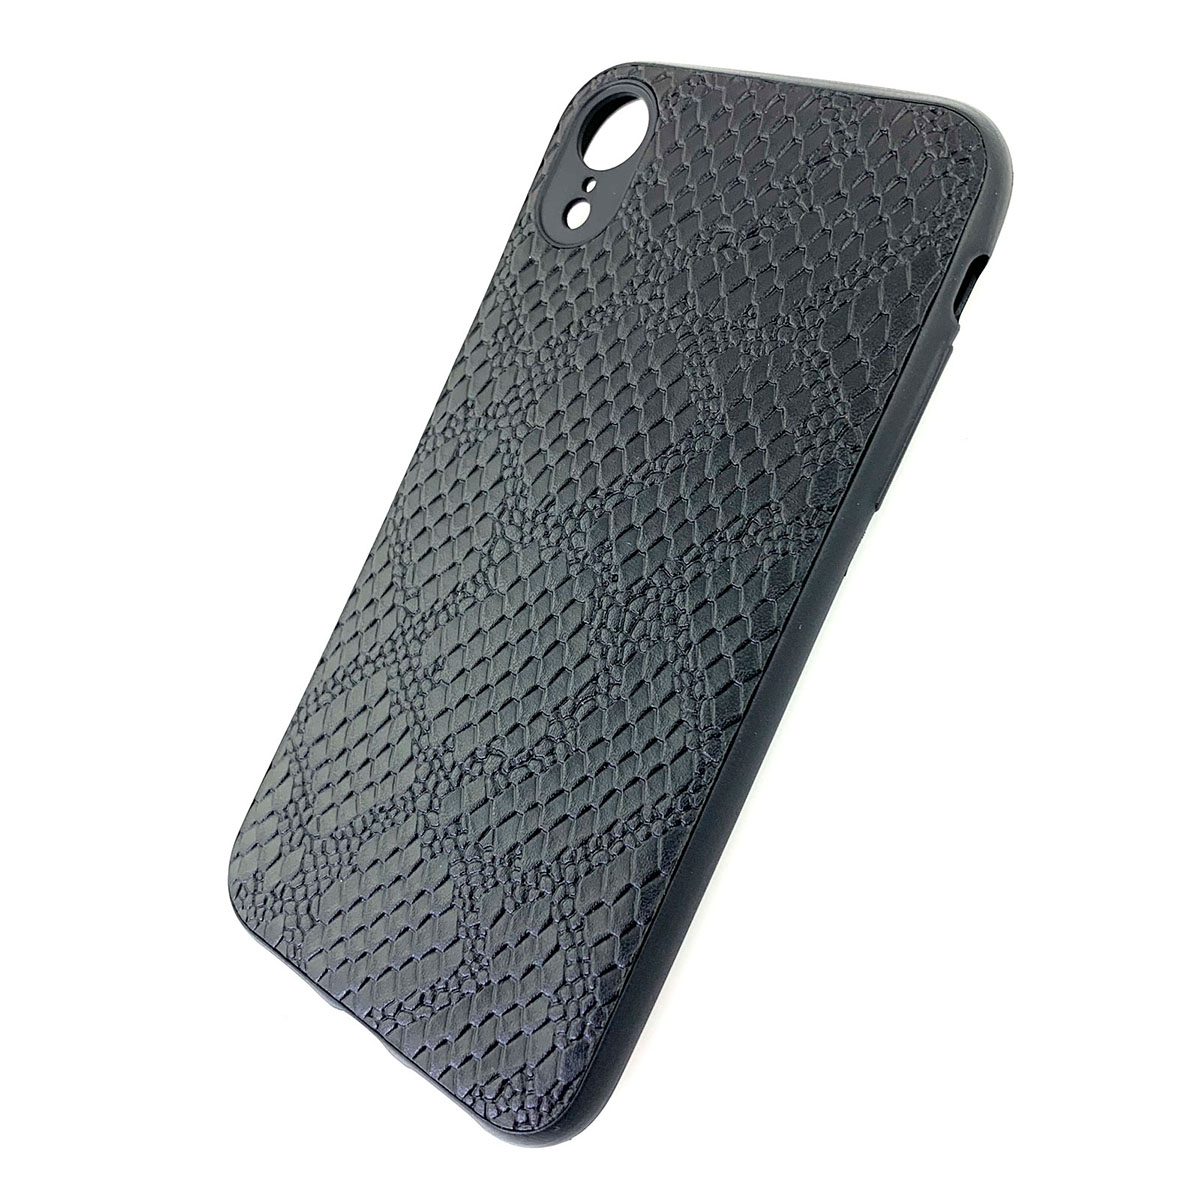 Чехол накладка для APPLE iPhone XR, силикон, под кожу питона, цвет черный.